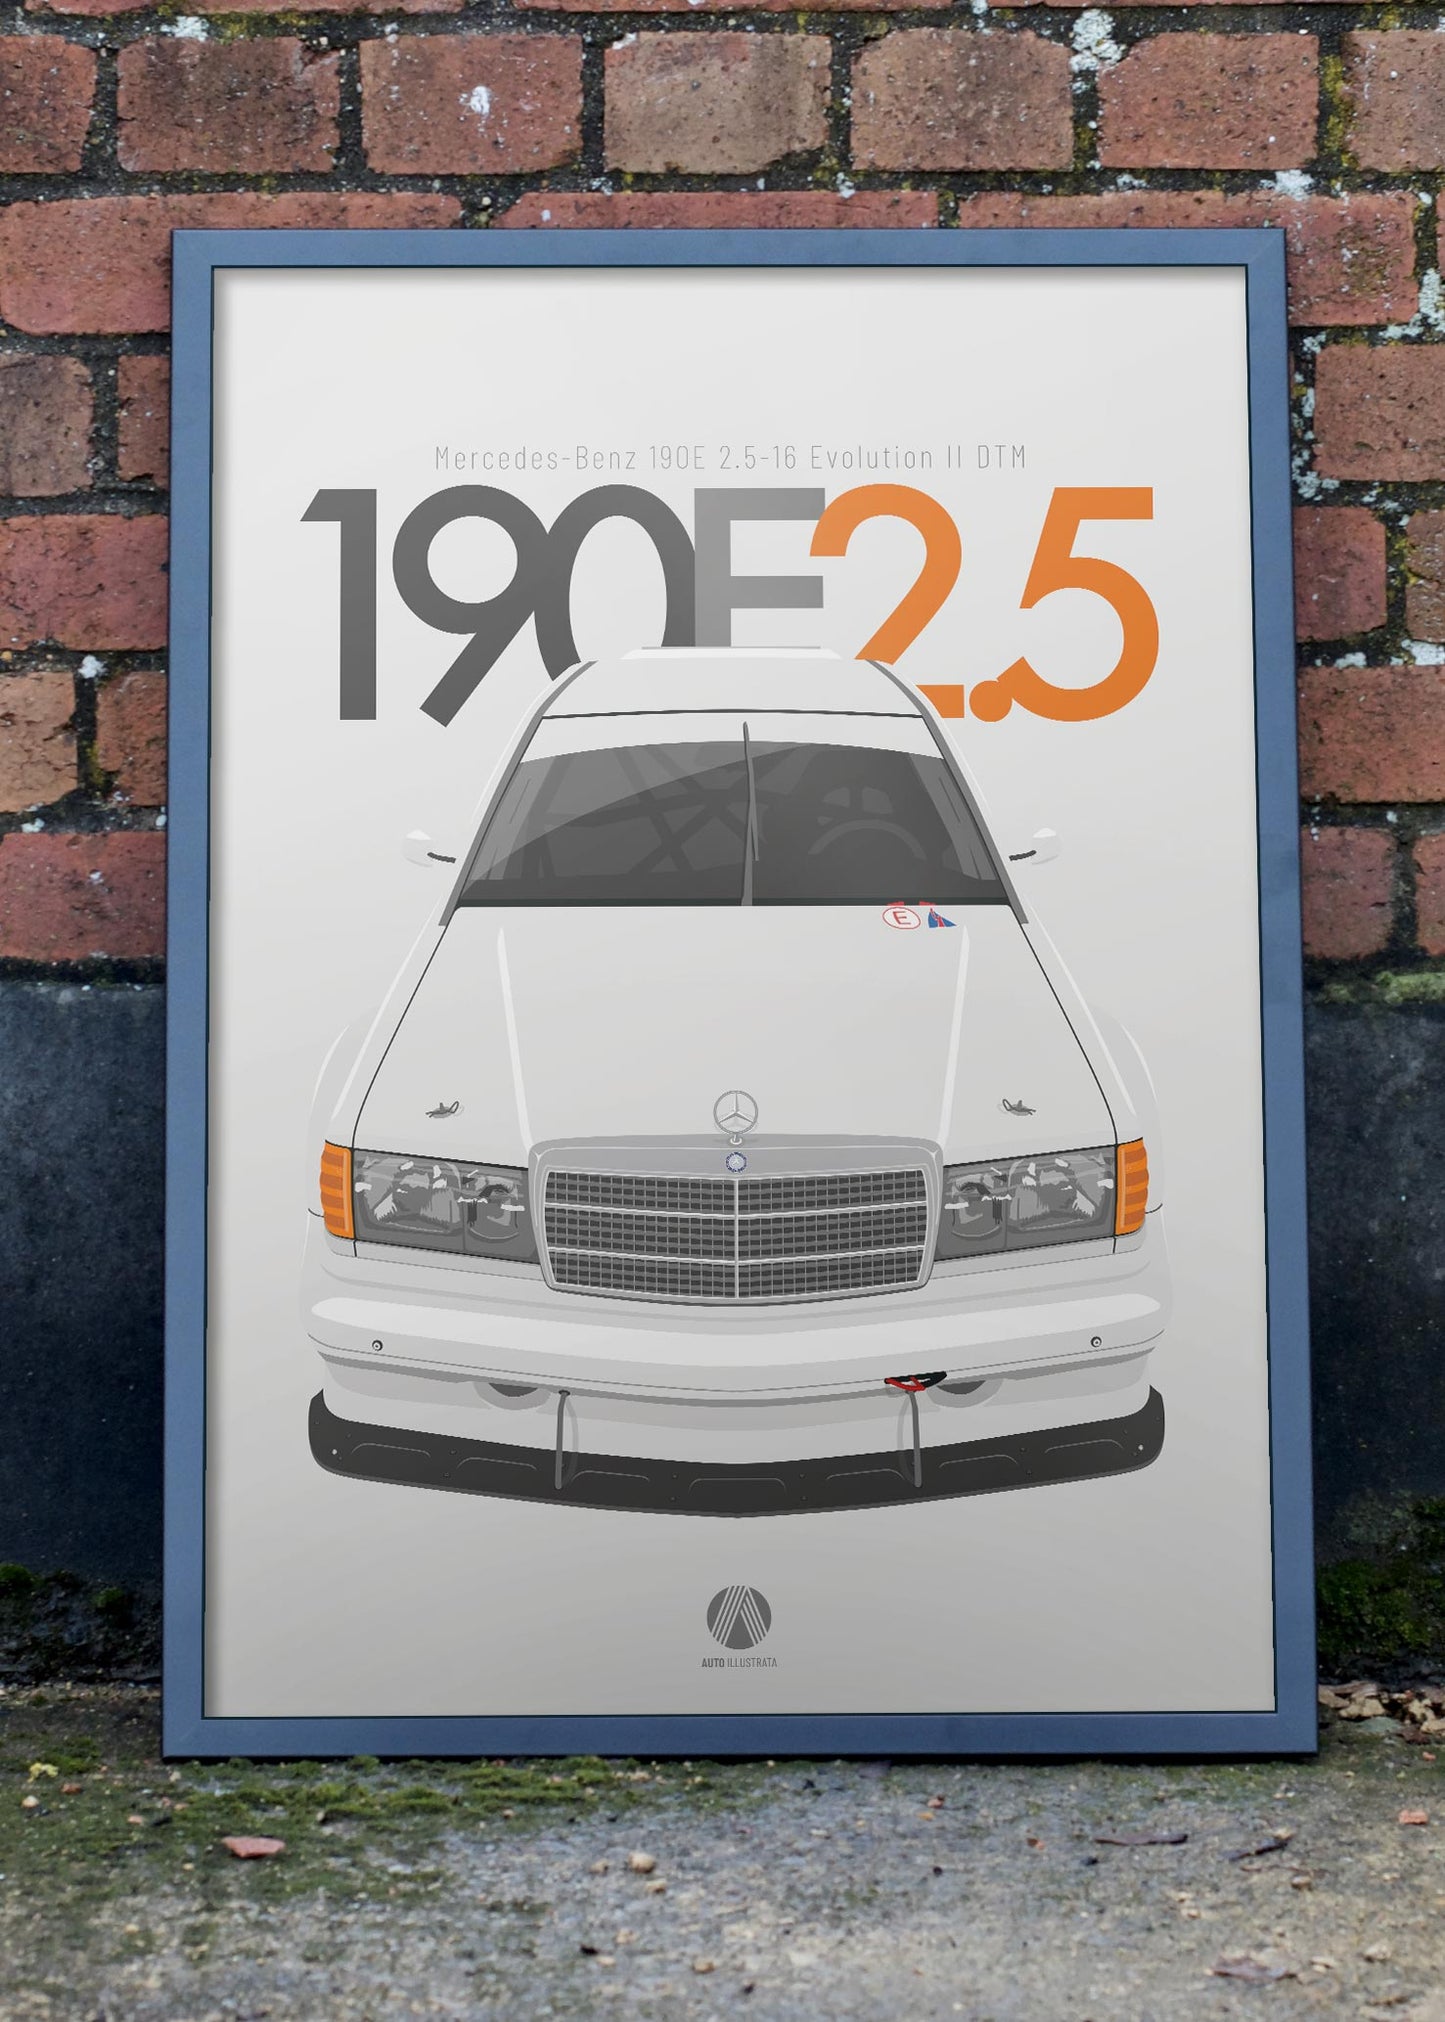 1992 Mercedes-Benz 190E 2.5-16 Evolution II DTM - poster print